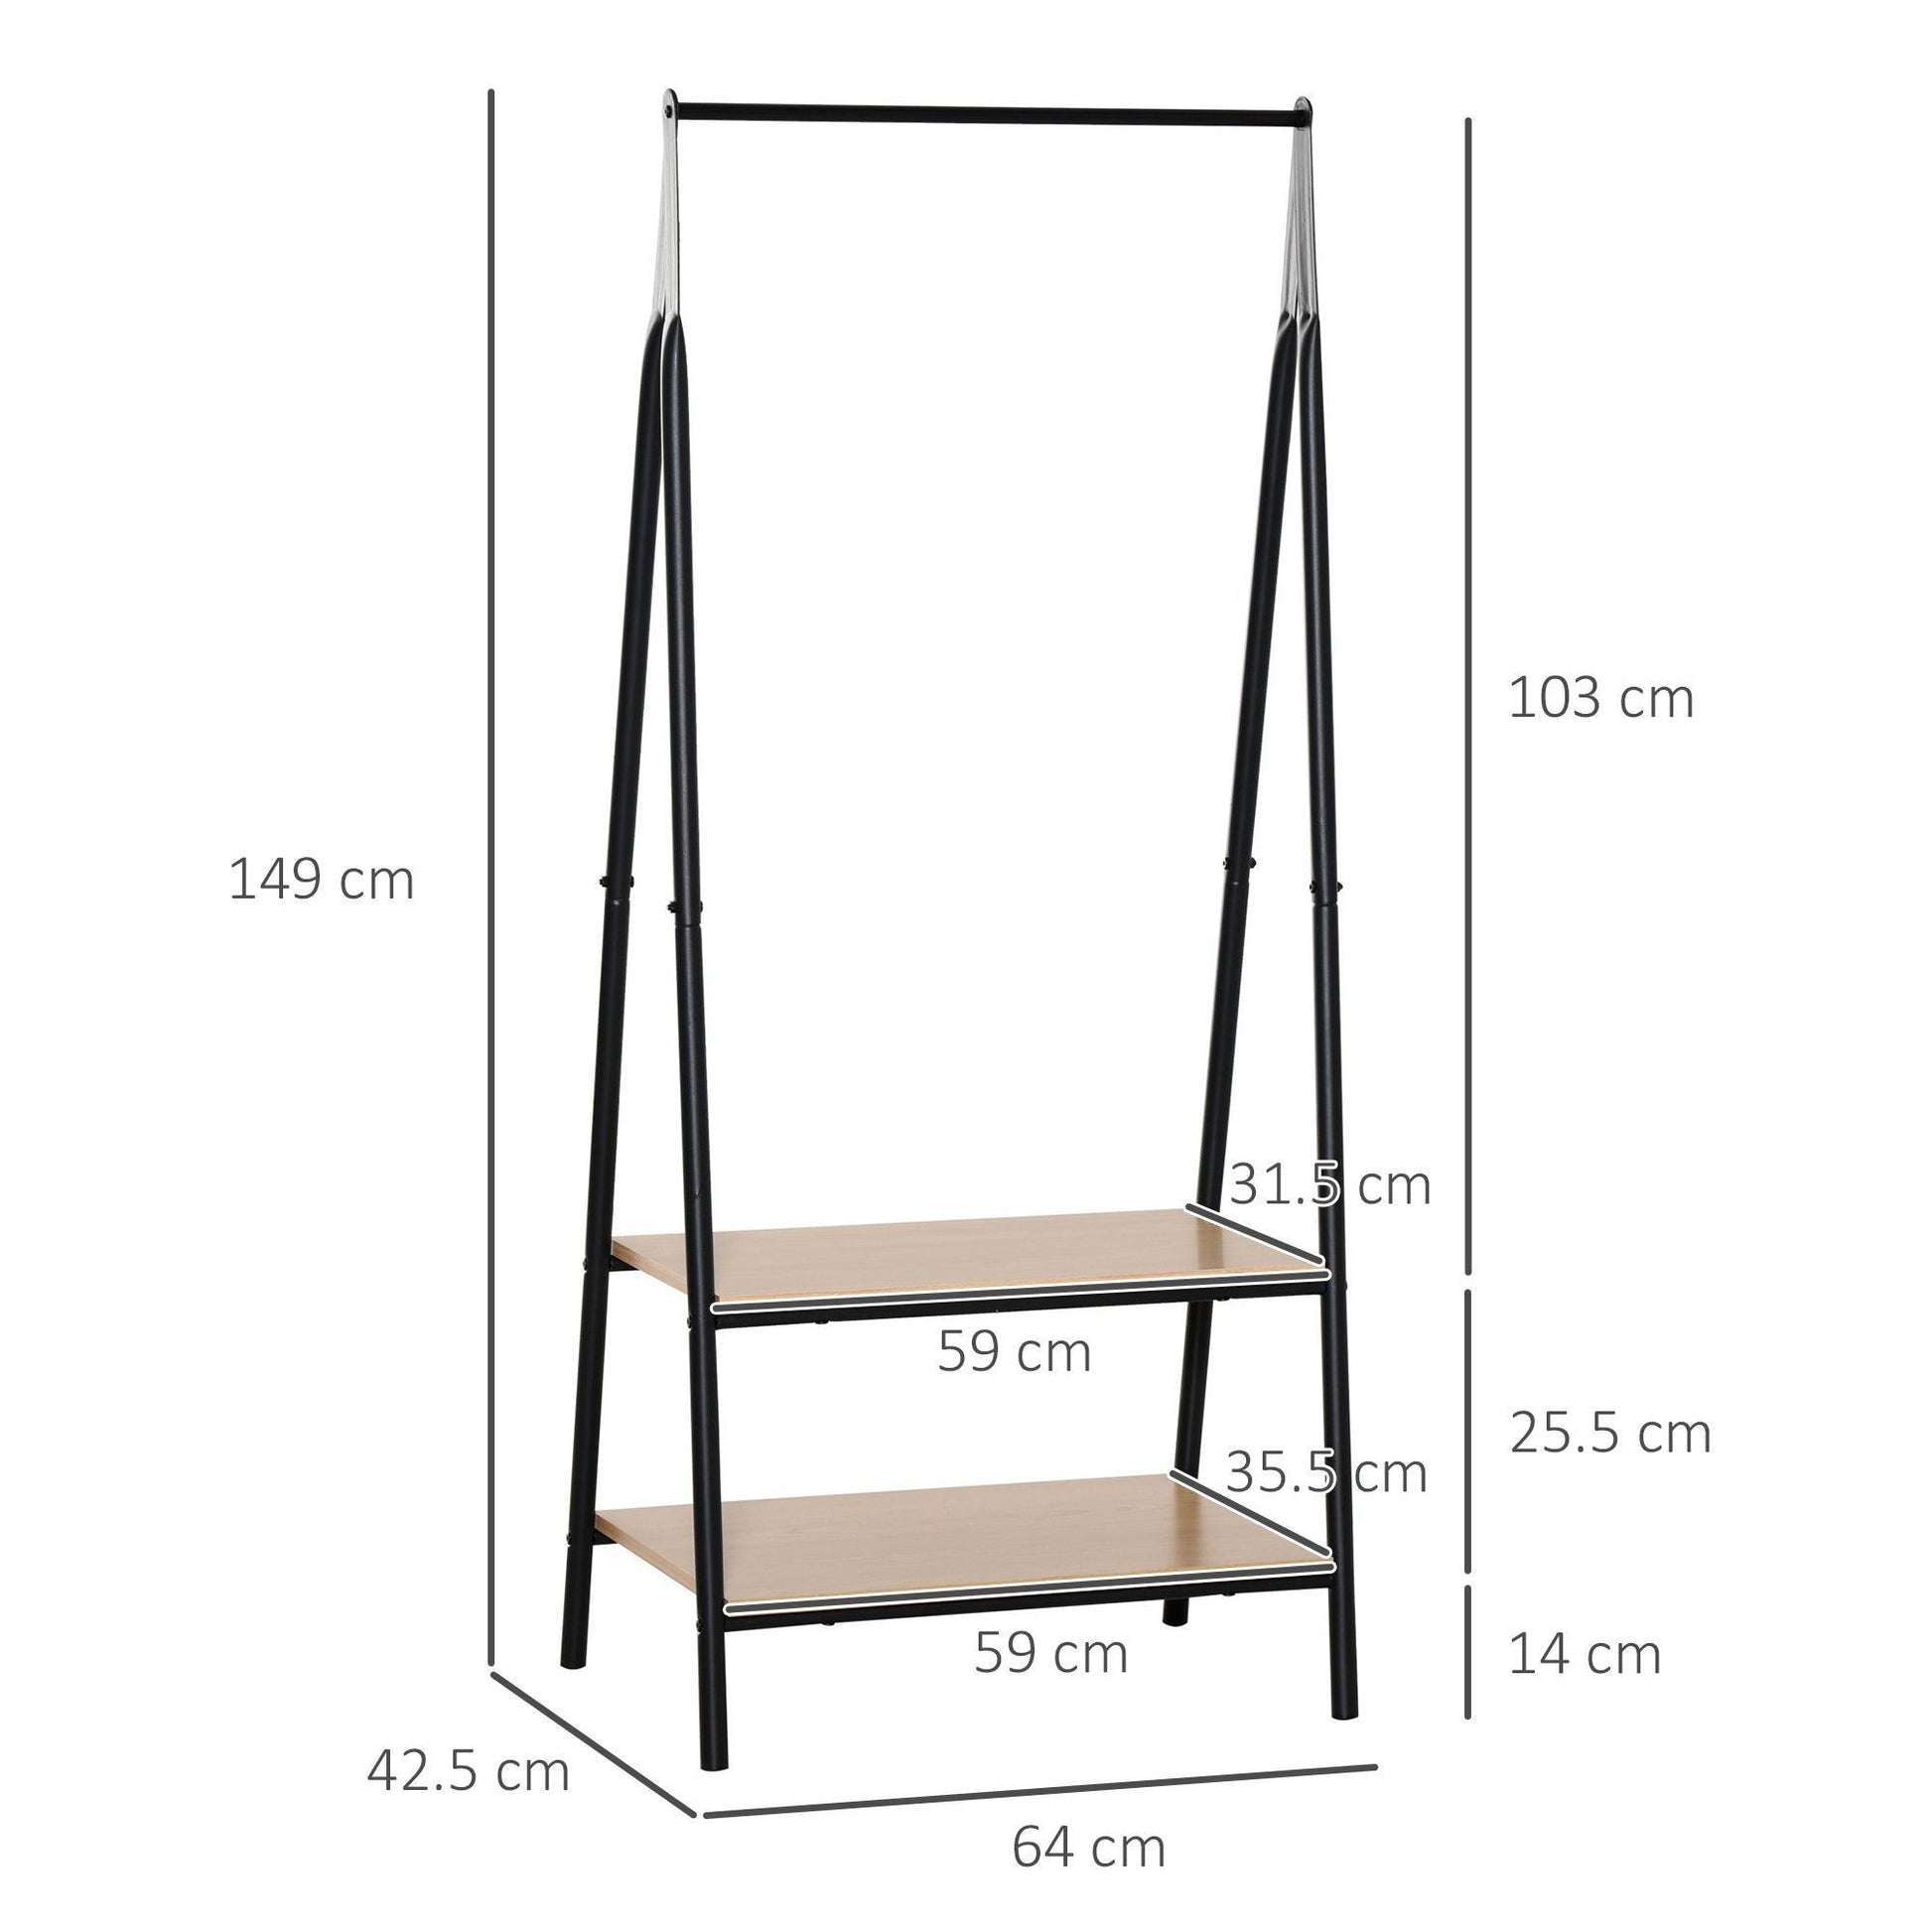 HOMCOM Clothes Rail with 2 Shelves - 64 x 149 cm, Black - ALL4U RETAILER LTD